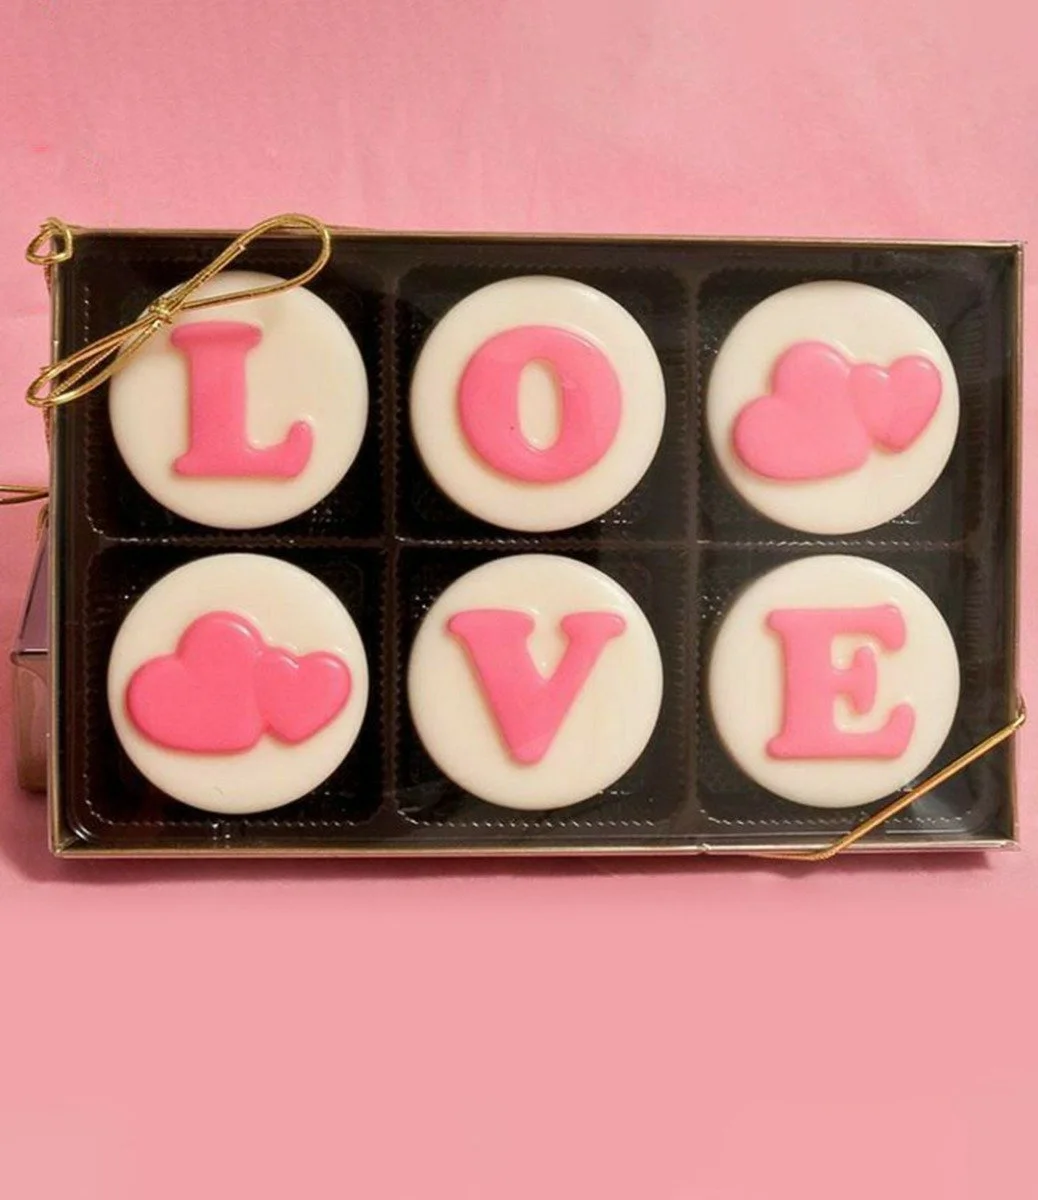 كوكيز أوريو بالشوكولاتة على شكل حروف كلمة "حب" وردية